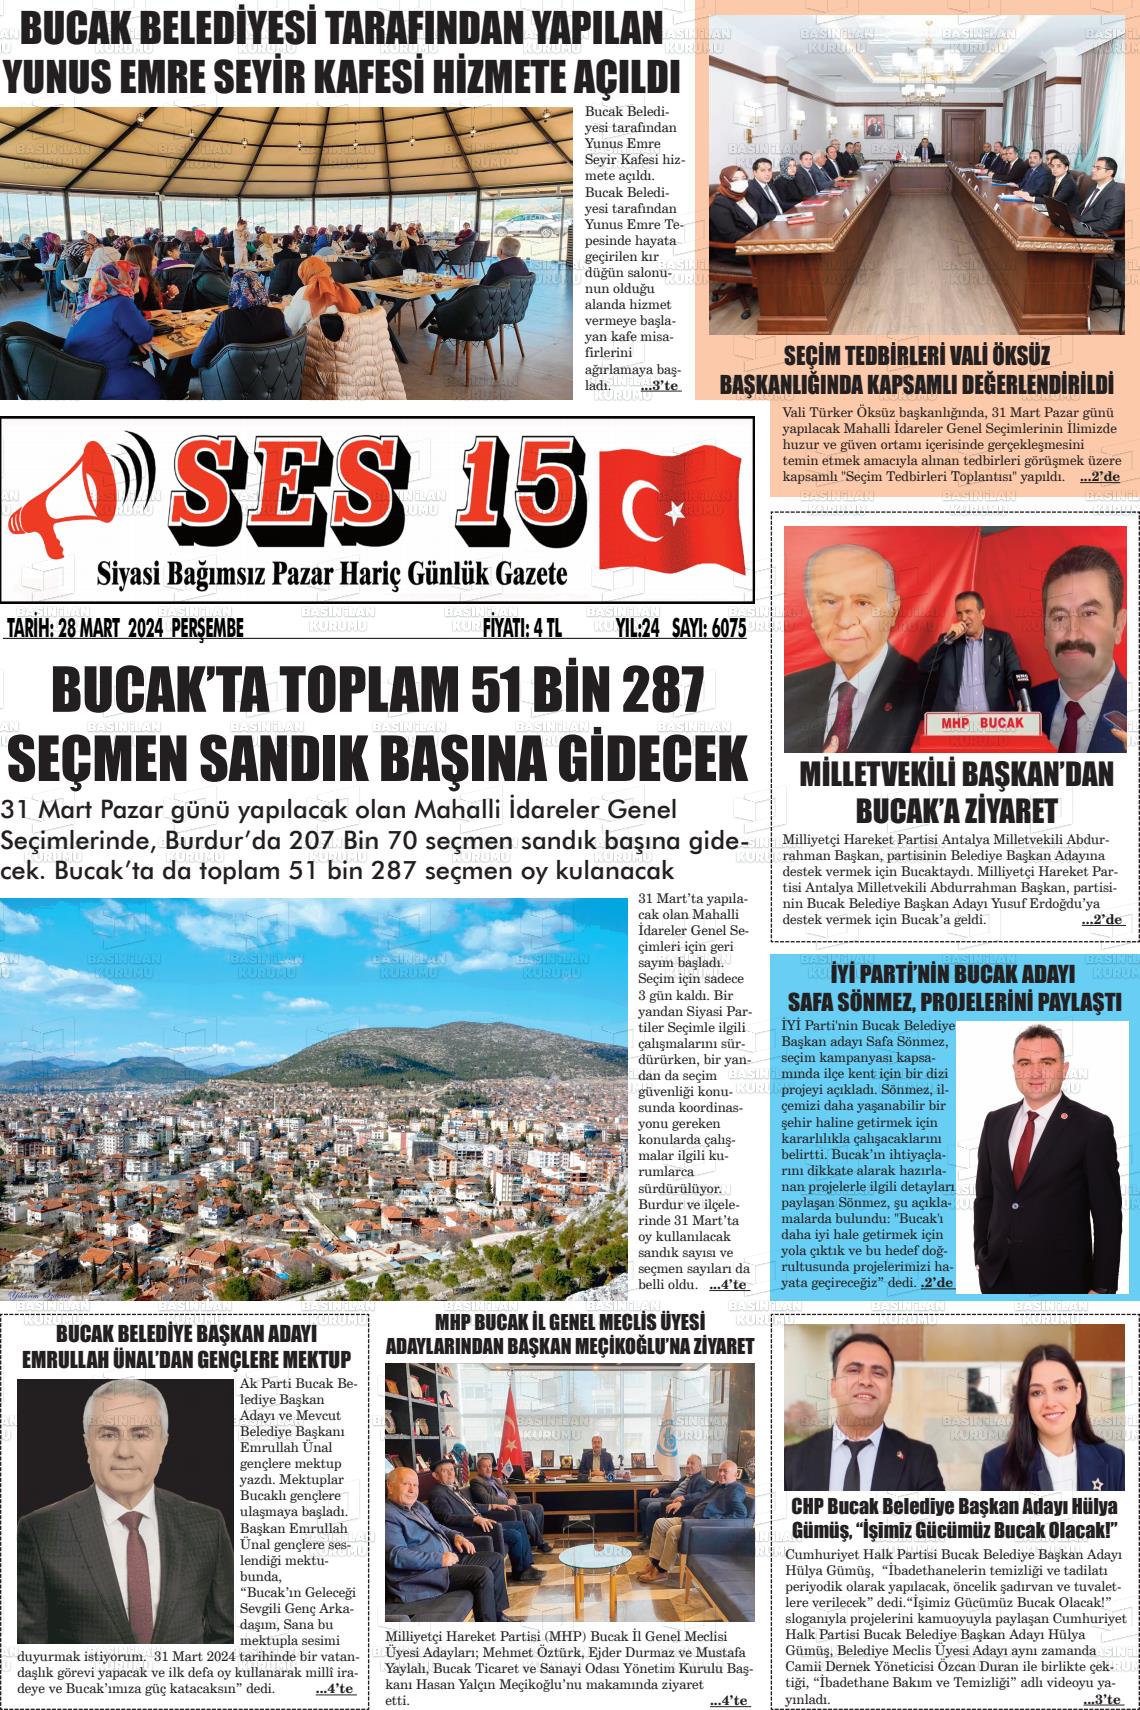 28 Mart 2024 Ses 15 Gazete Manşeti